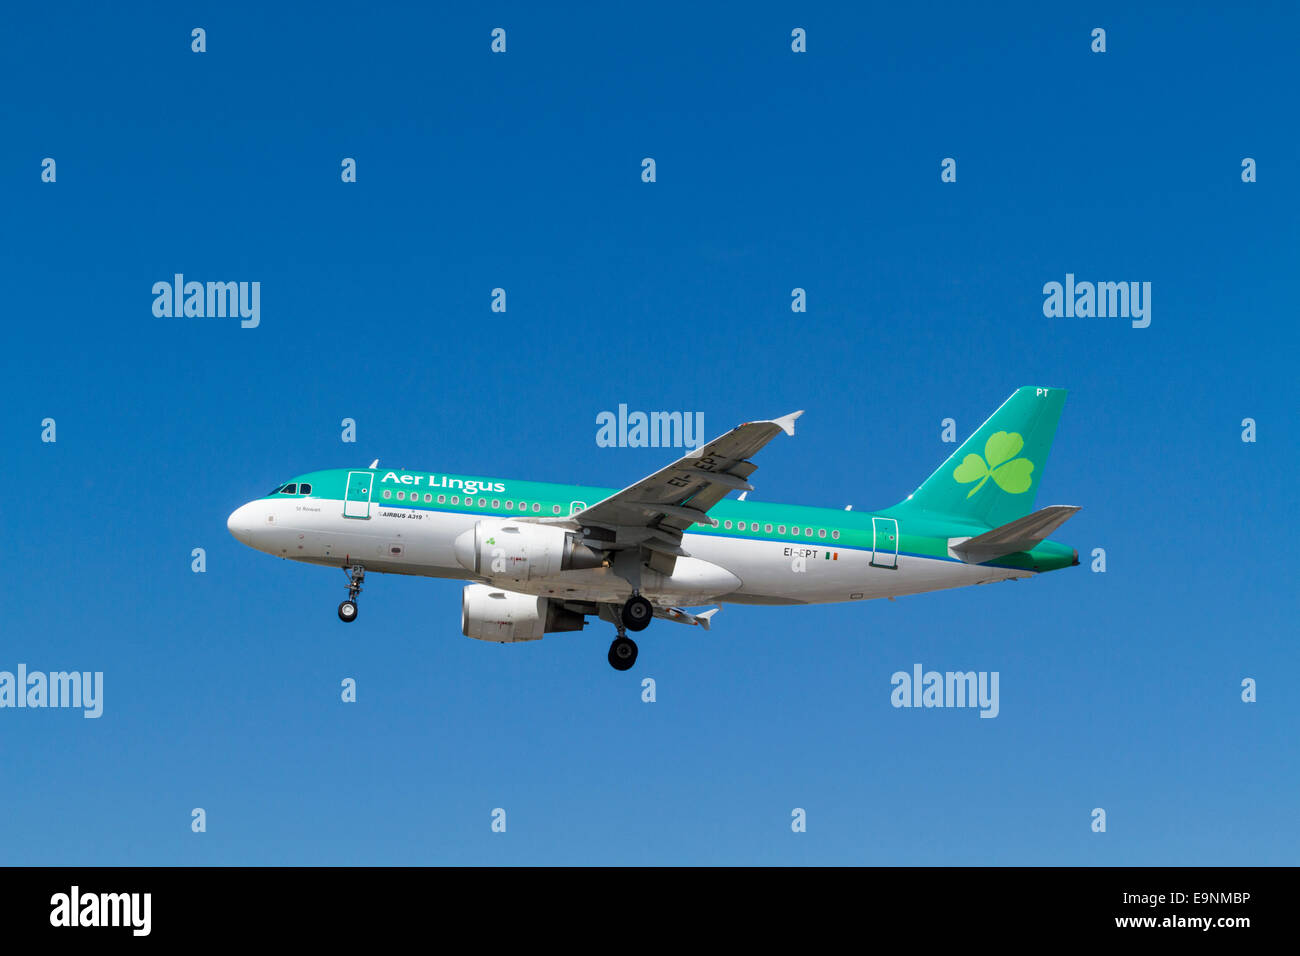 Aer Lingus avion Airbus A319, l'IE-EPT, nommé St Rowan, sur son approche pour l'atterrissage à l'aéroport de Londres Heathrow, Angleterre, RU Banque D'Images